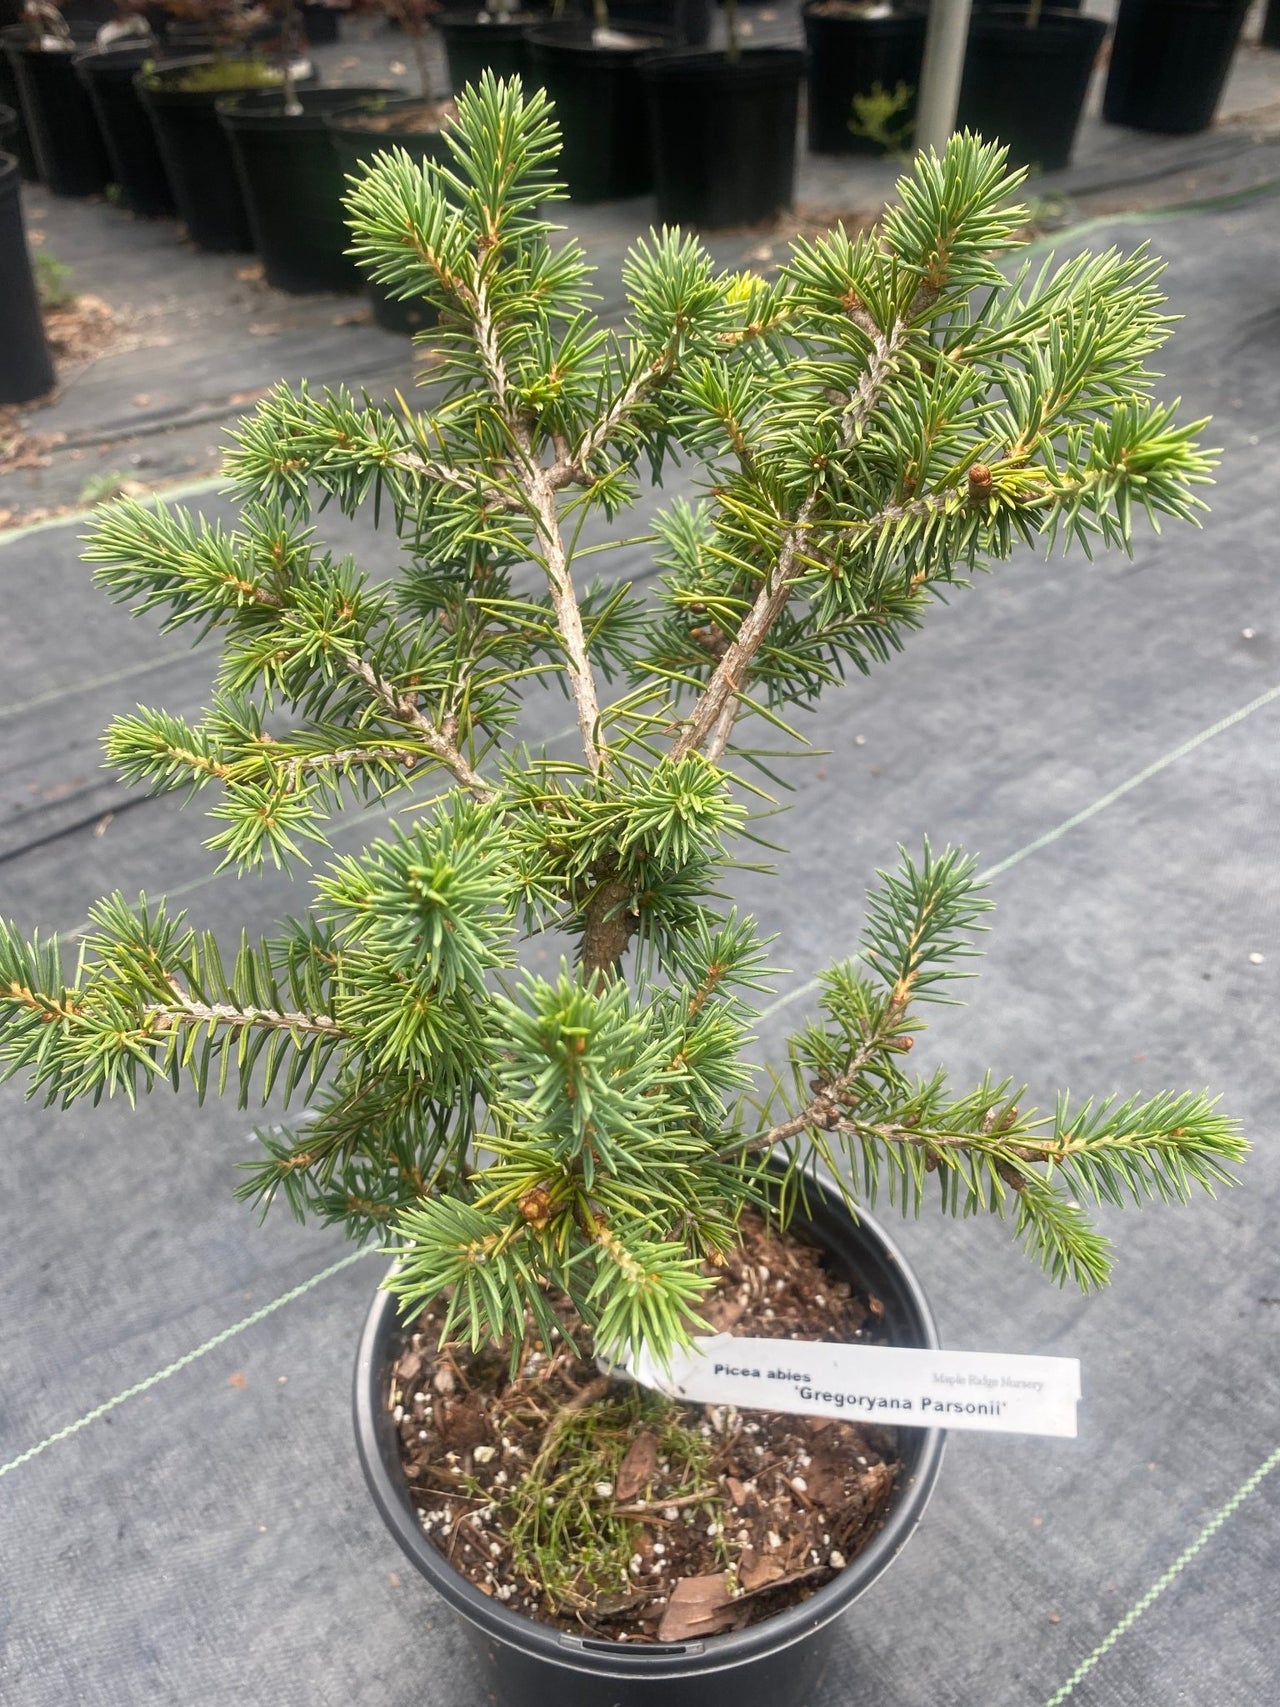 Picea abies 'Gregoryana Parsonii' - mapleridgenursery